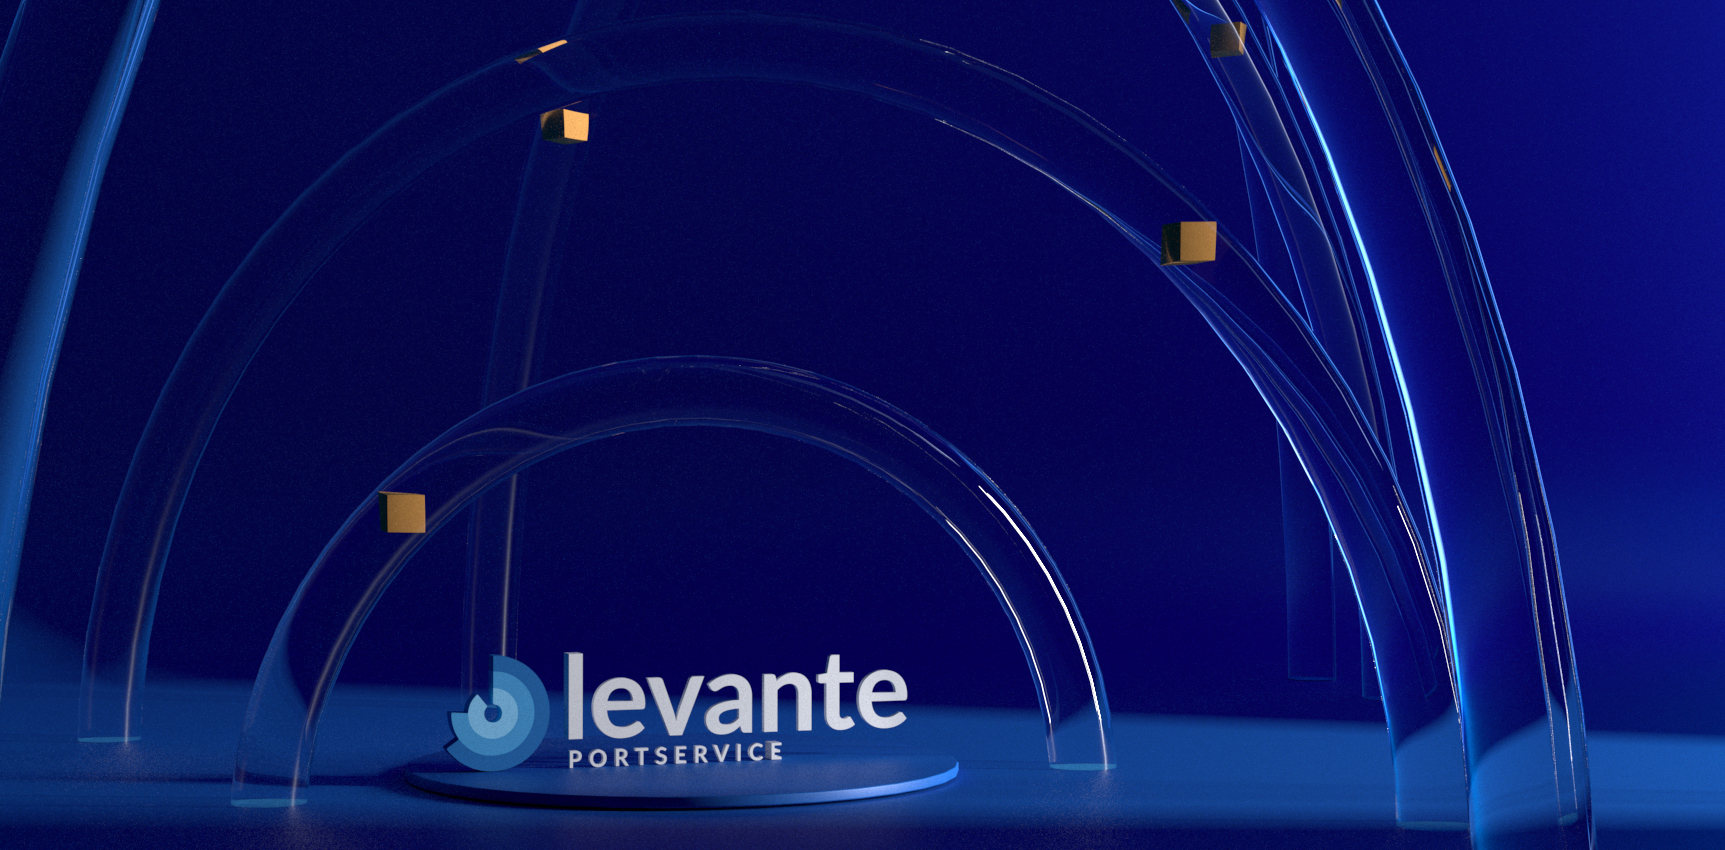 Levante Portservice